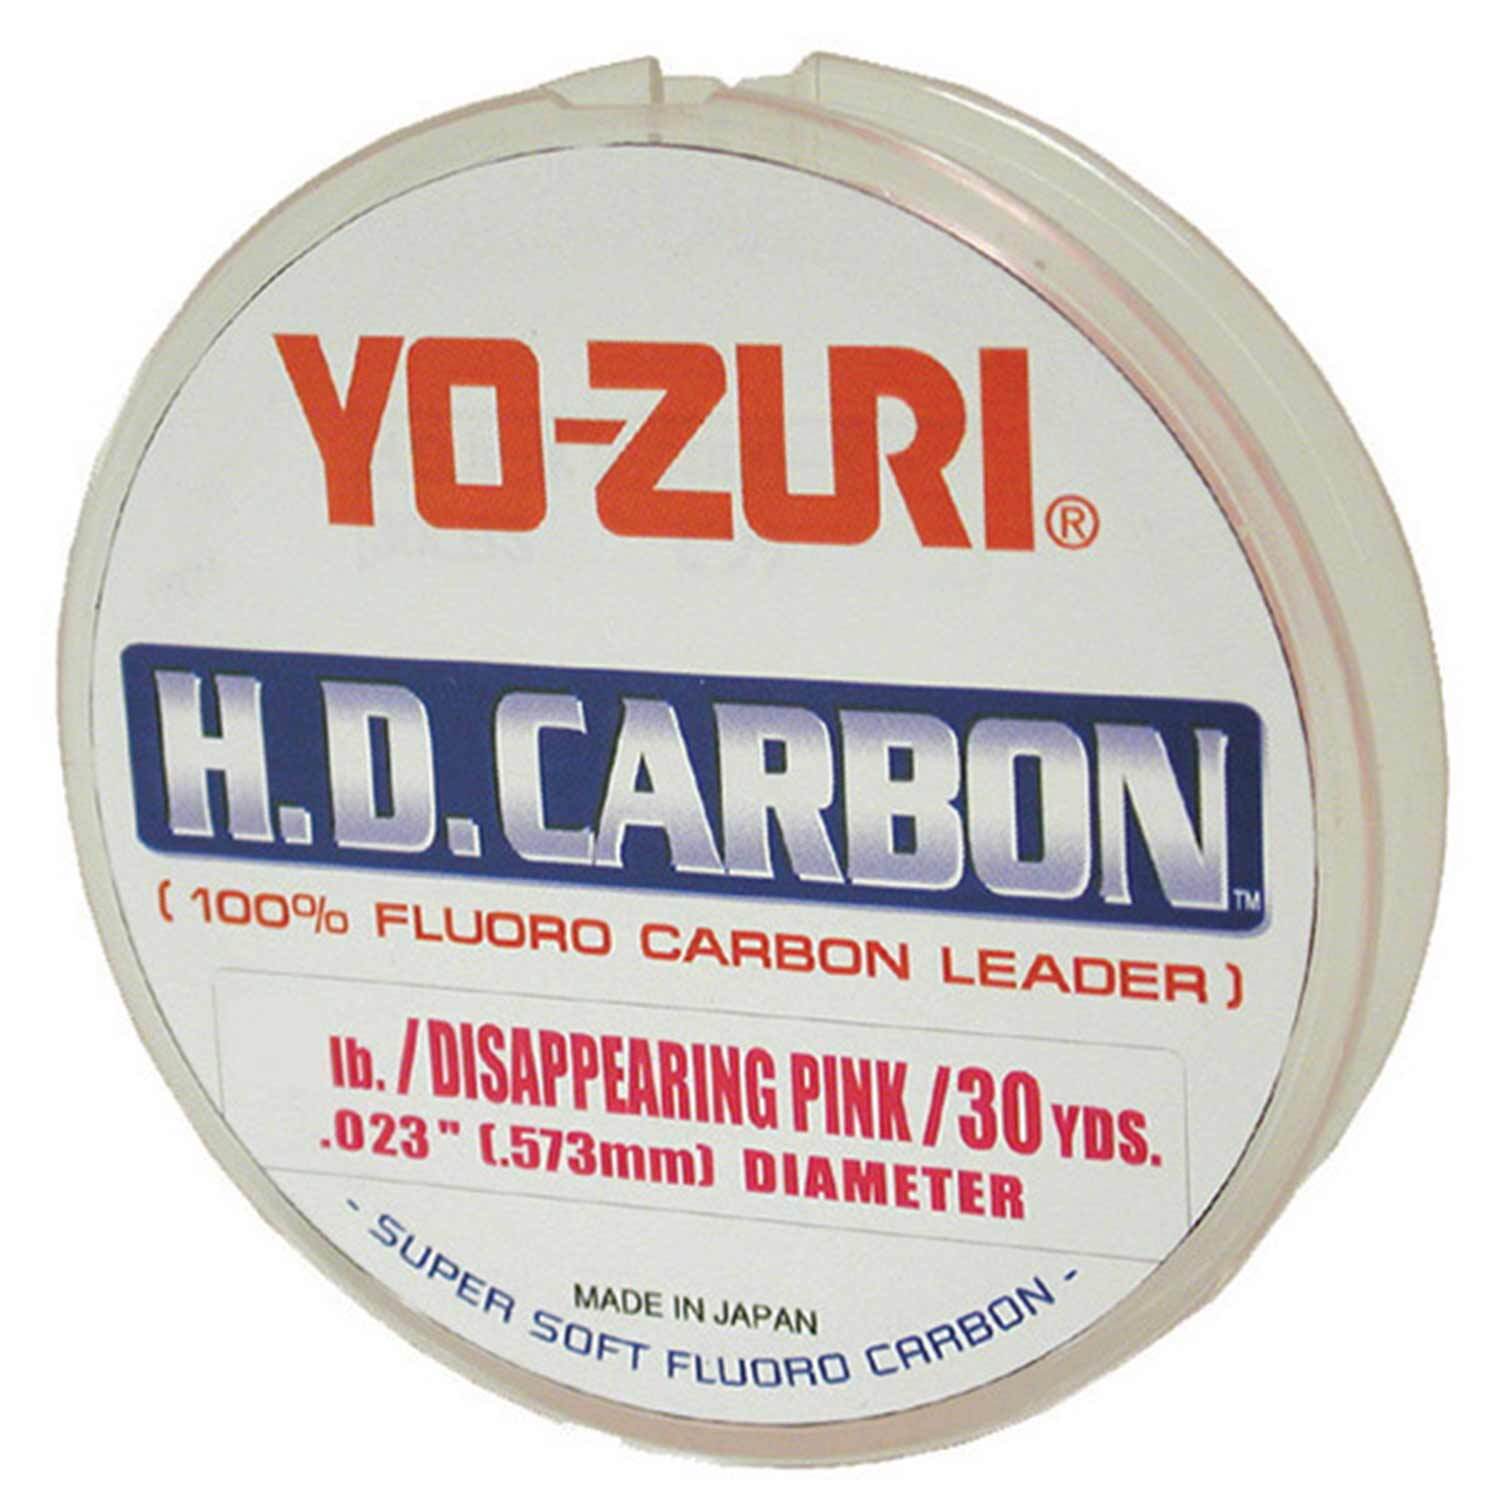 Yo-Zuri HD Fluorocarbon Leader Pink 30yds 200-Pound